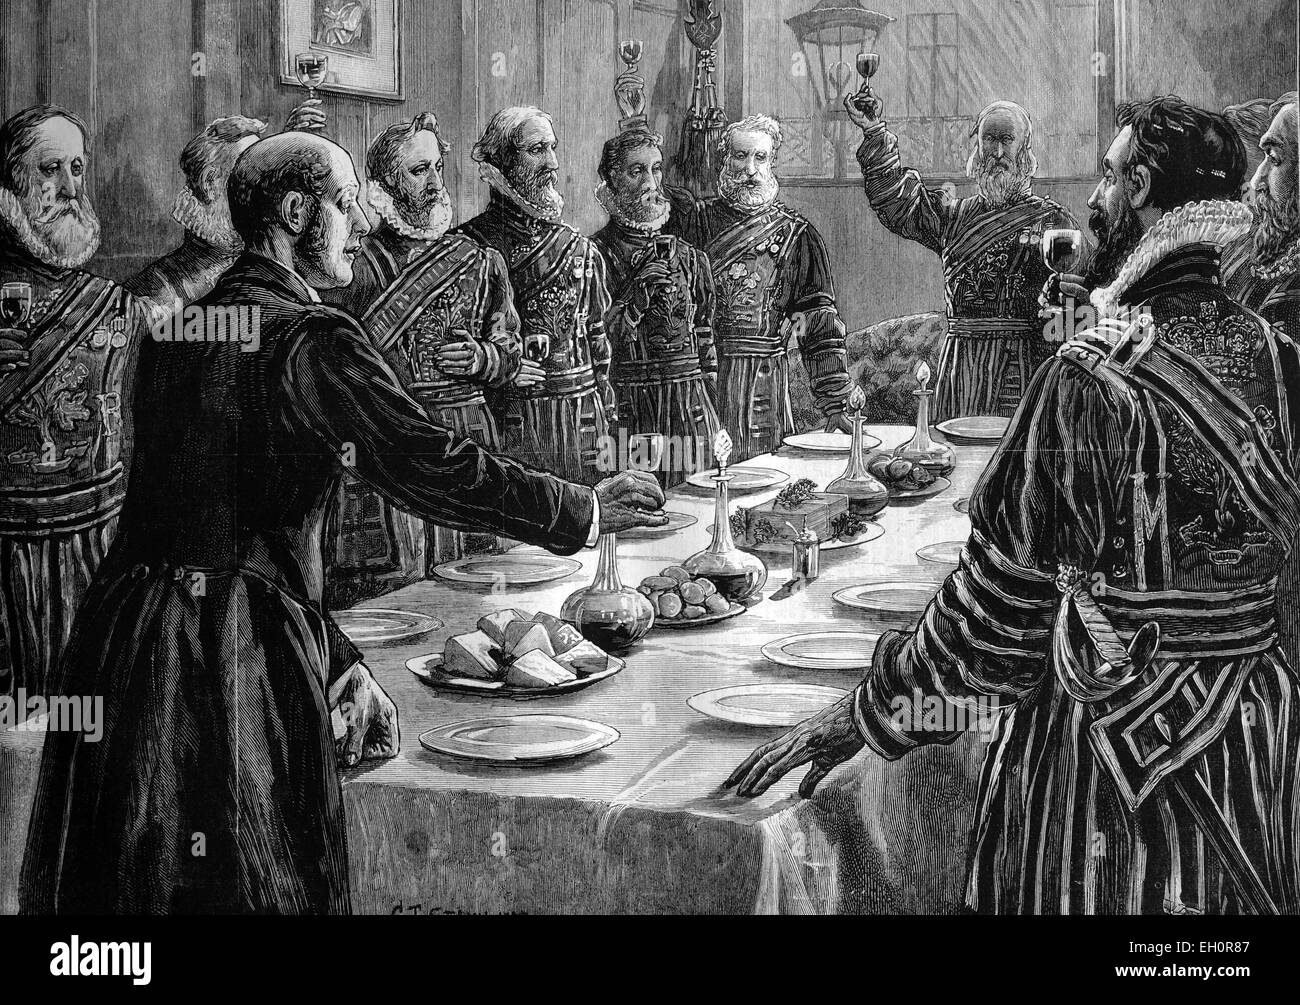 L'ouverture du Parlement, Yeoman du garde de Sa Majesté la reine à boire après une recherche en santé le sous-sol des Maisons du Parlement, Londres, Angleterre, illustration historique, 1884 Banque D'Images